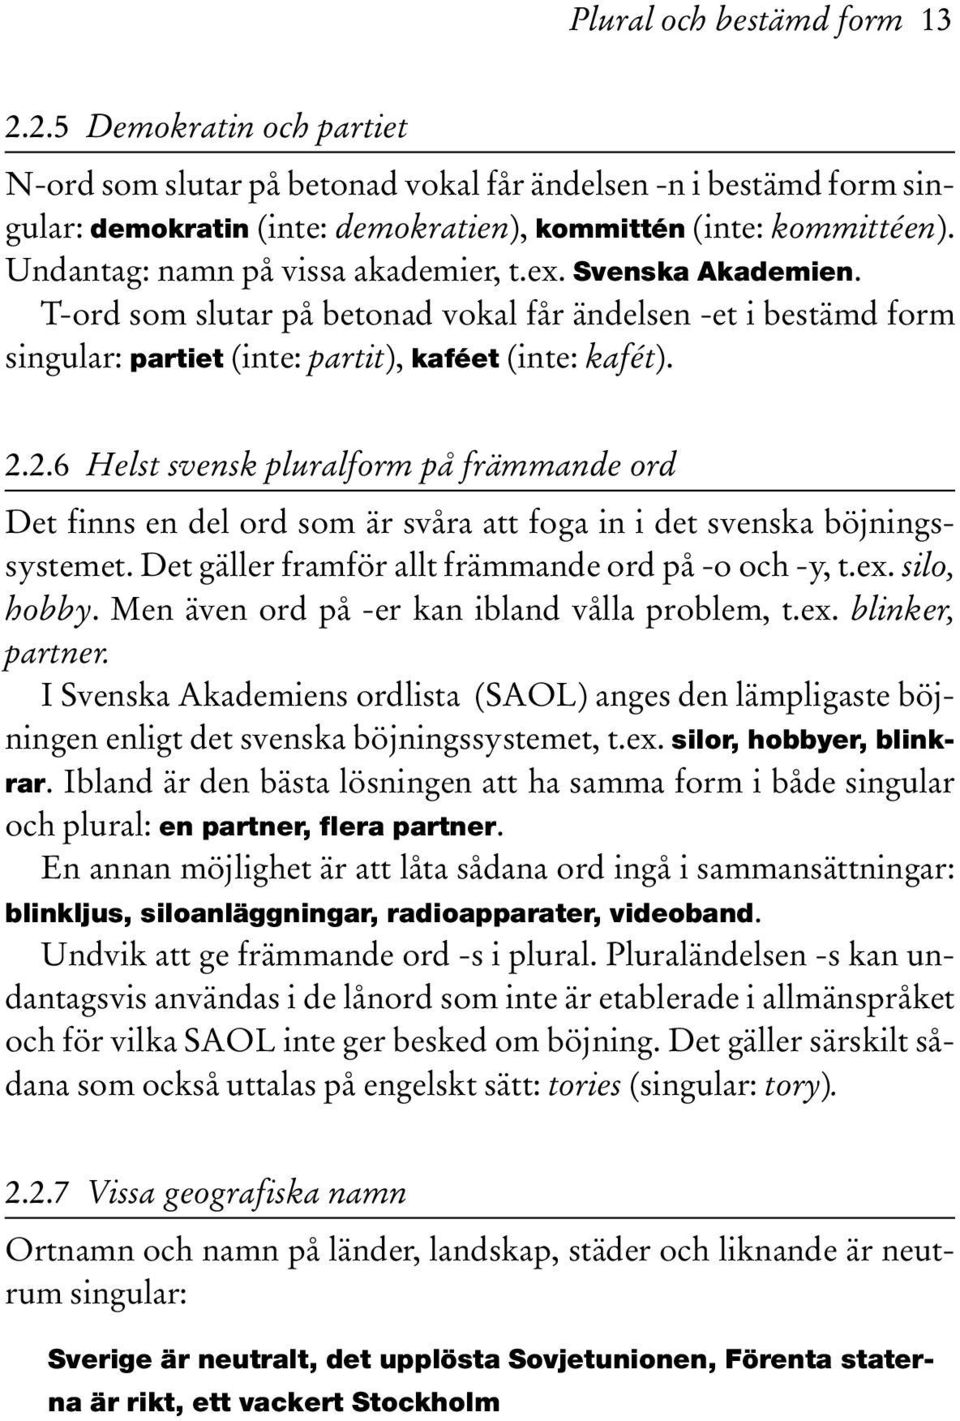 2.6 Helst svensk pluralform på främmande ord Det finns en del ord som är svåra att foga in i det svenska böjningssystemet. Det gäller framför allt främmande ord på -o och -y, t.ex. silo, hobby.